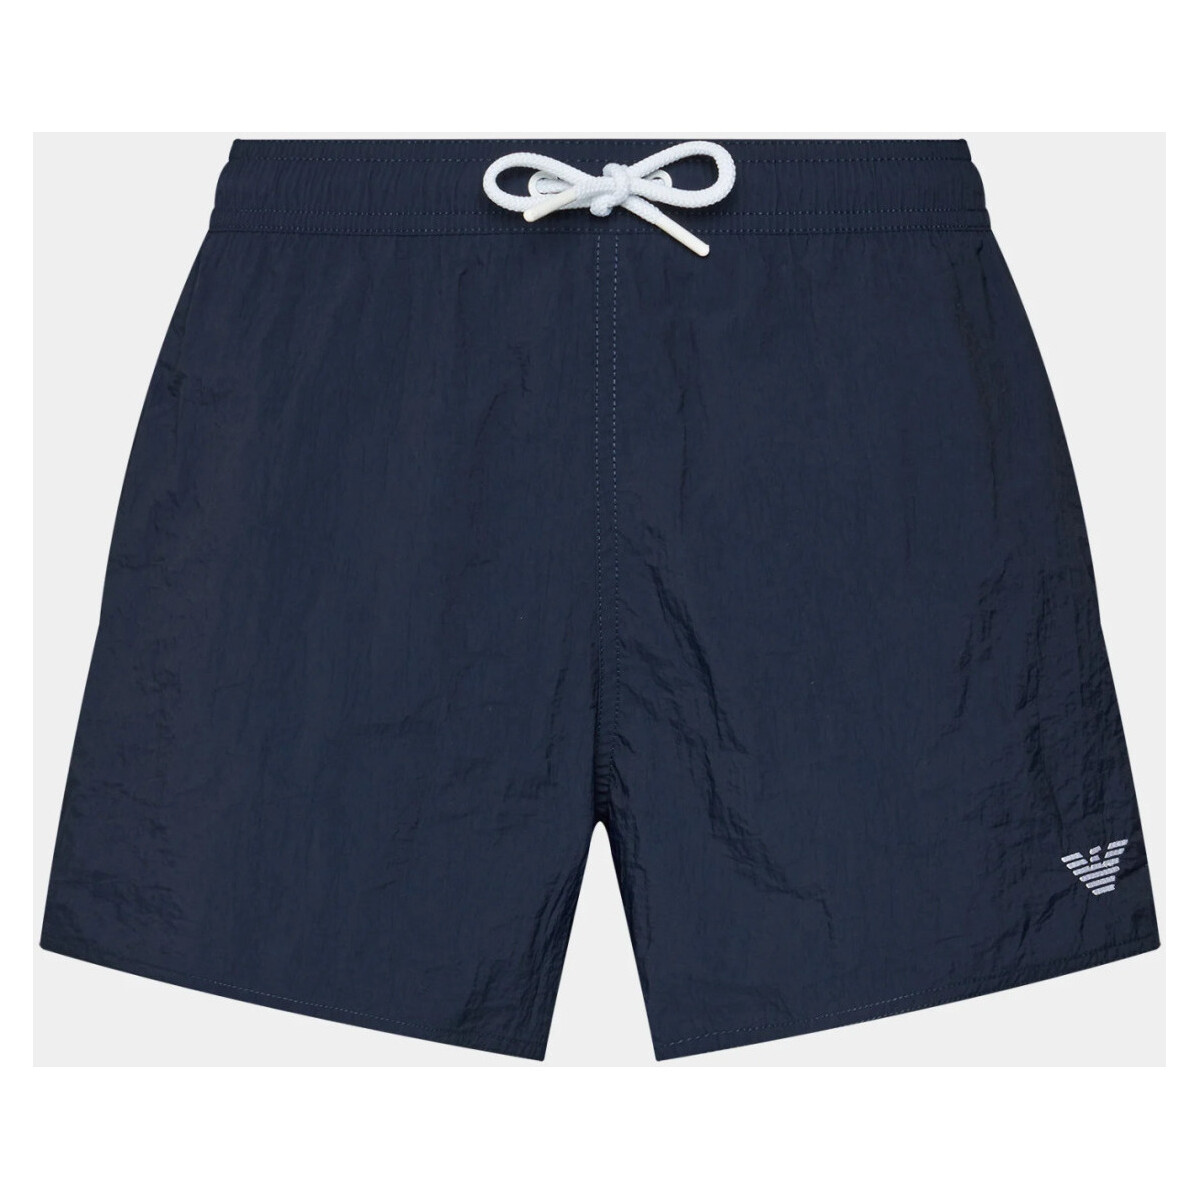 Vêtements Homme Maillots / Shorts de bain Emporio Armani 211756 4R422 Bleu